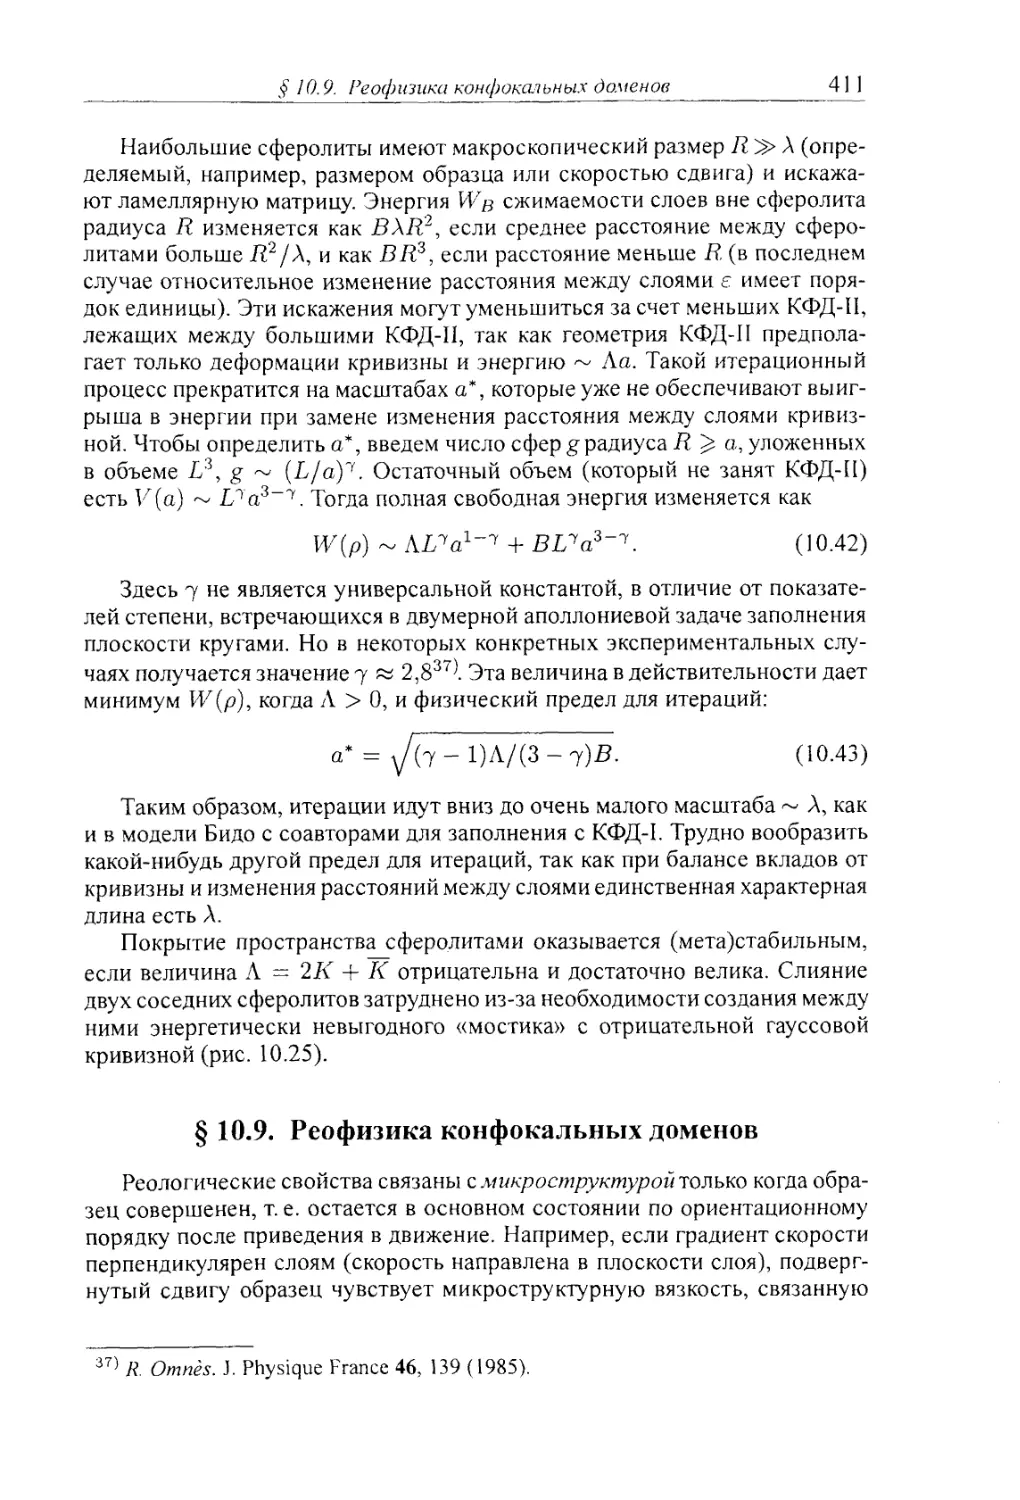 § 10.9. Реофизика конфокальных доменов